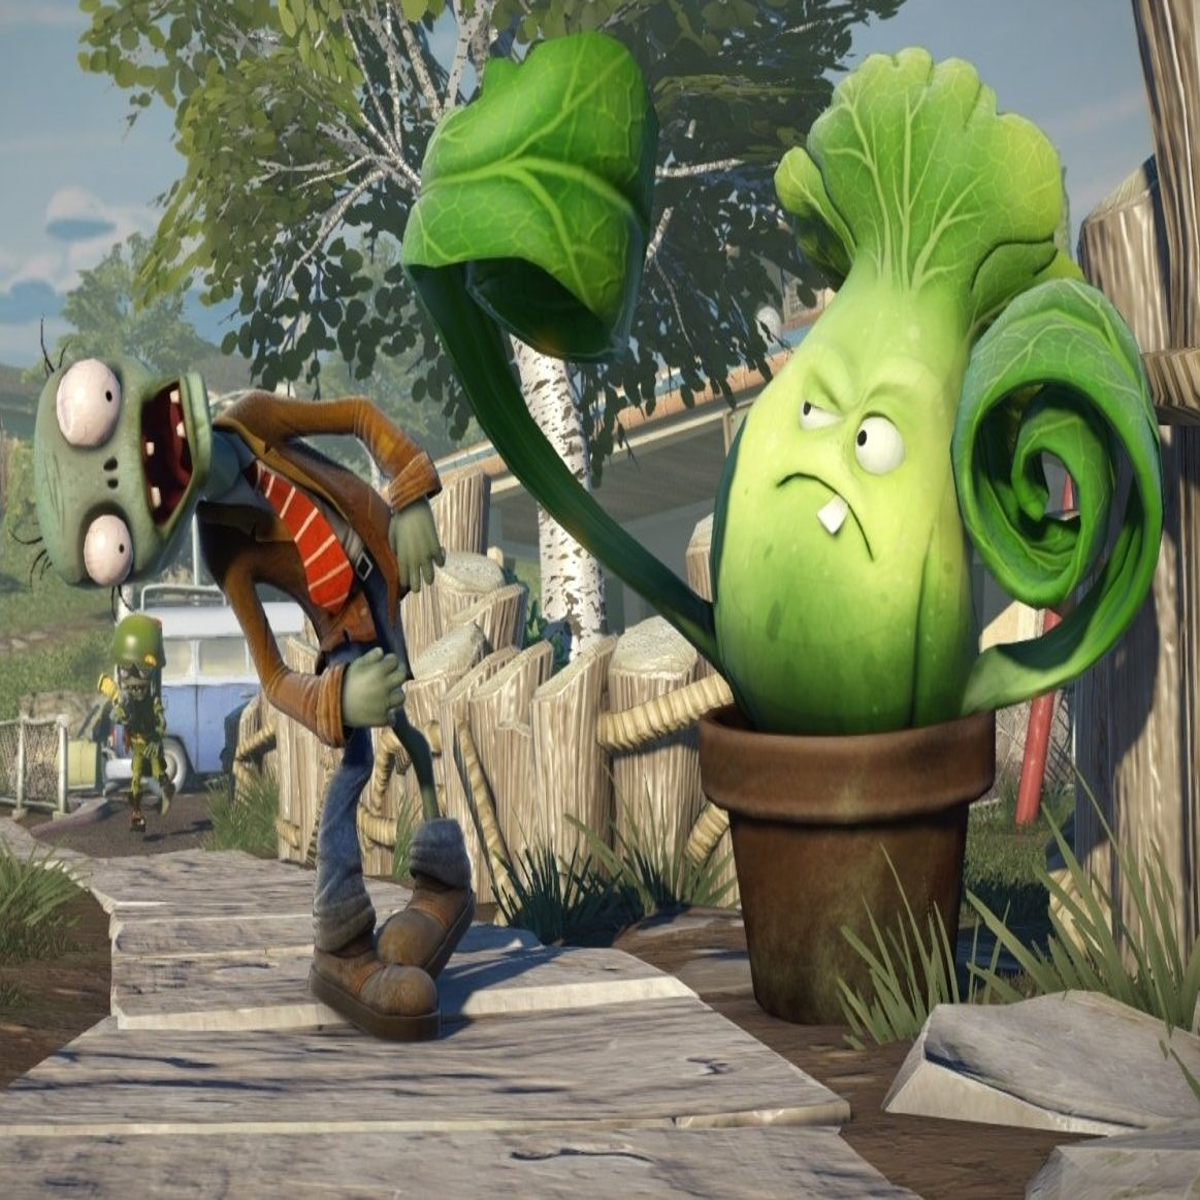 Plants vs. Zombies : Garden Warfare free for EA access members